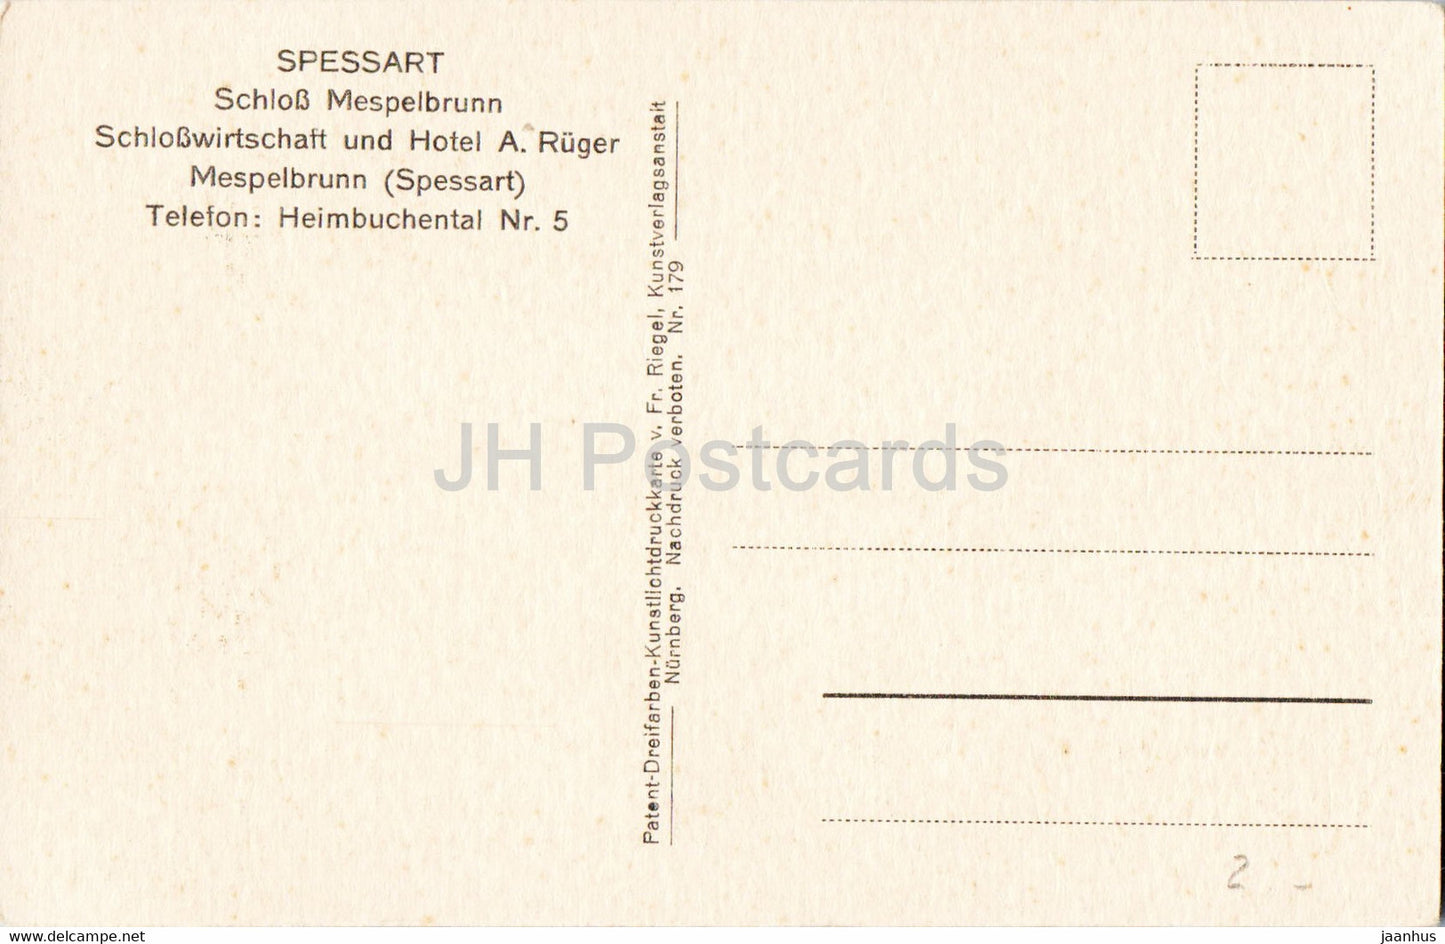 Spessart - Schloss Mespelbrunn - oiseaux - cygne - château - 179 - carte postale ancienne - Allemagne - inutilisé